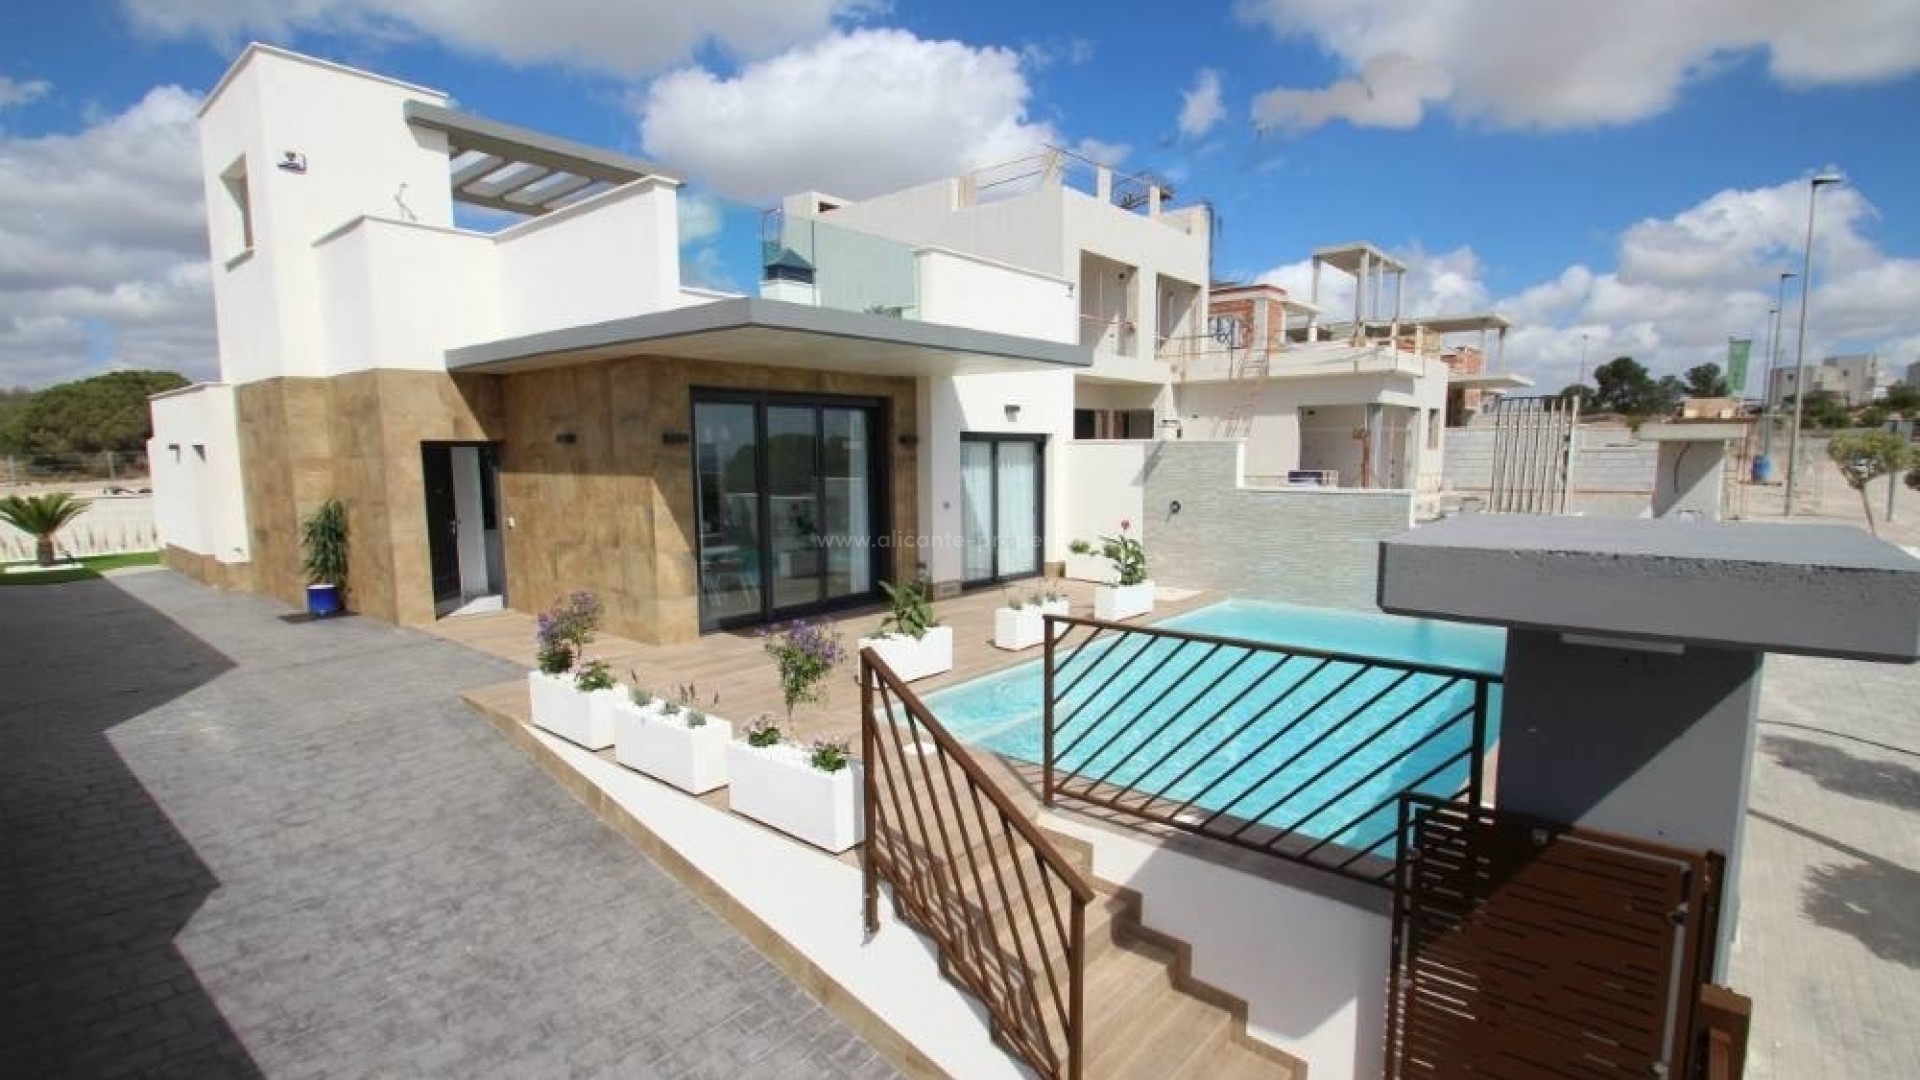 Eksklusive villaer/hus i San Miguel de Salinas, nær Torrevieja, 3 soverom, 3 bad, terrasse og solarium, privat hage med svømmebasseng og innkjørsel